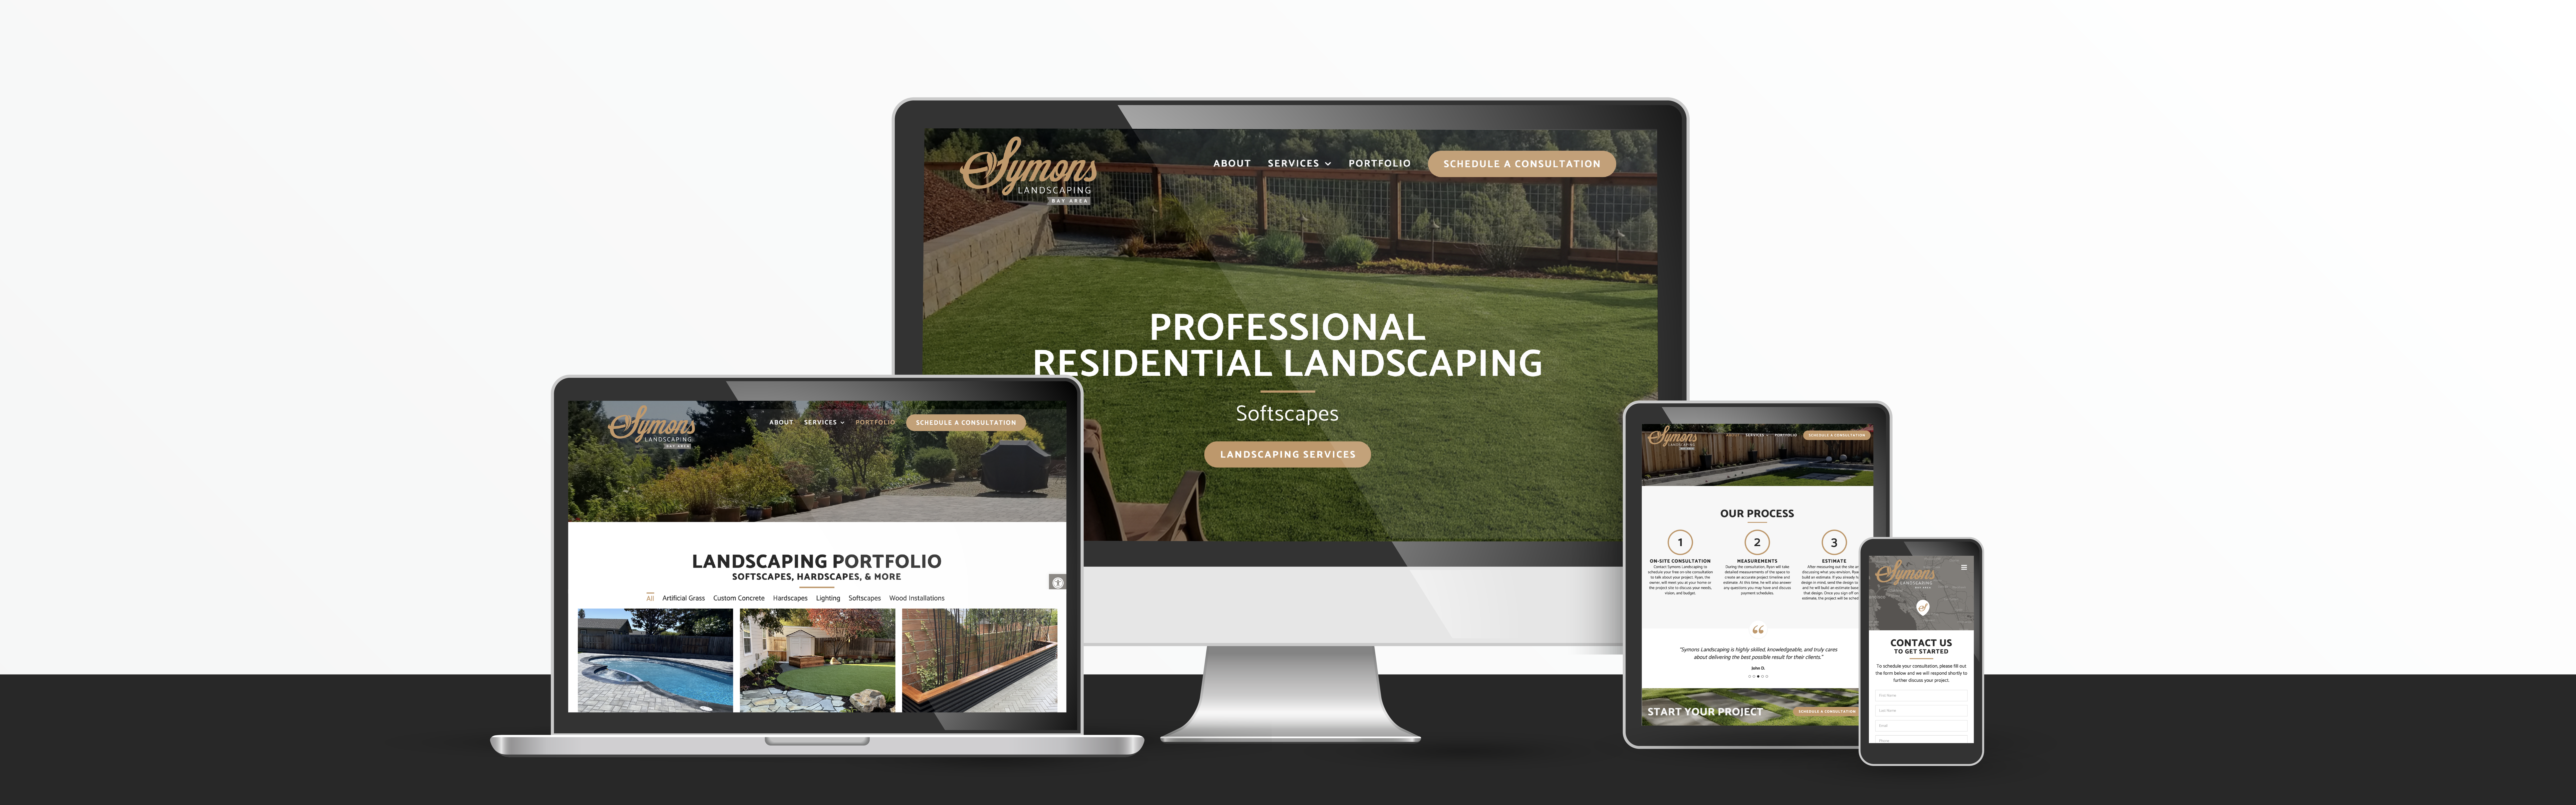 Symons Landscaping website design